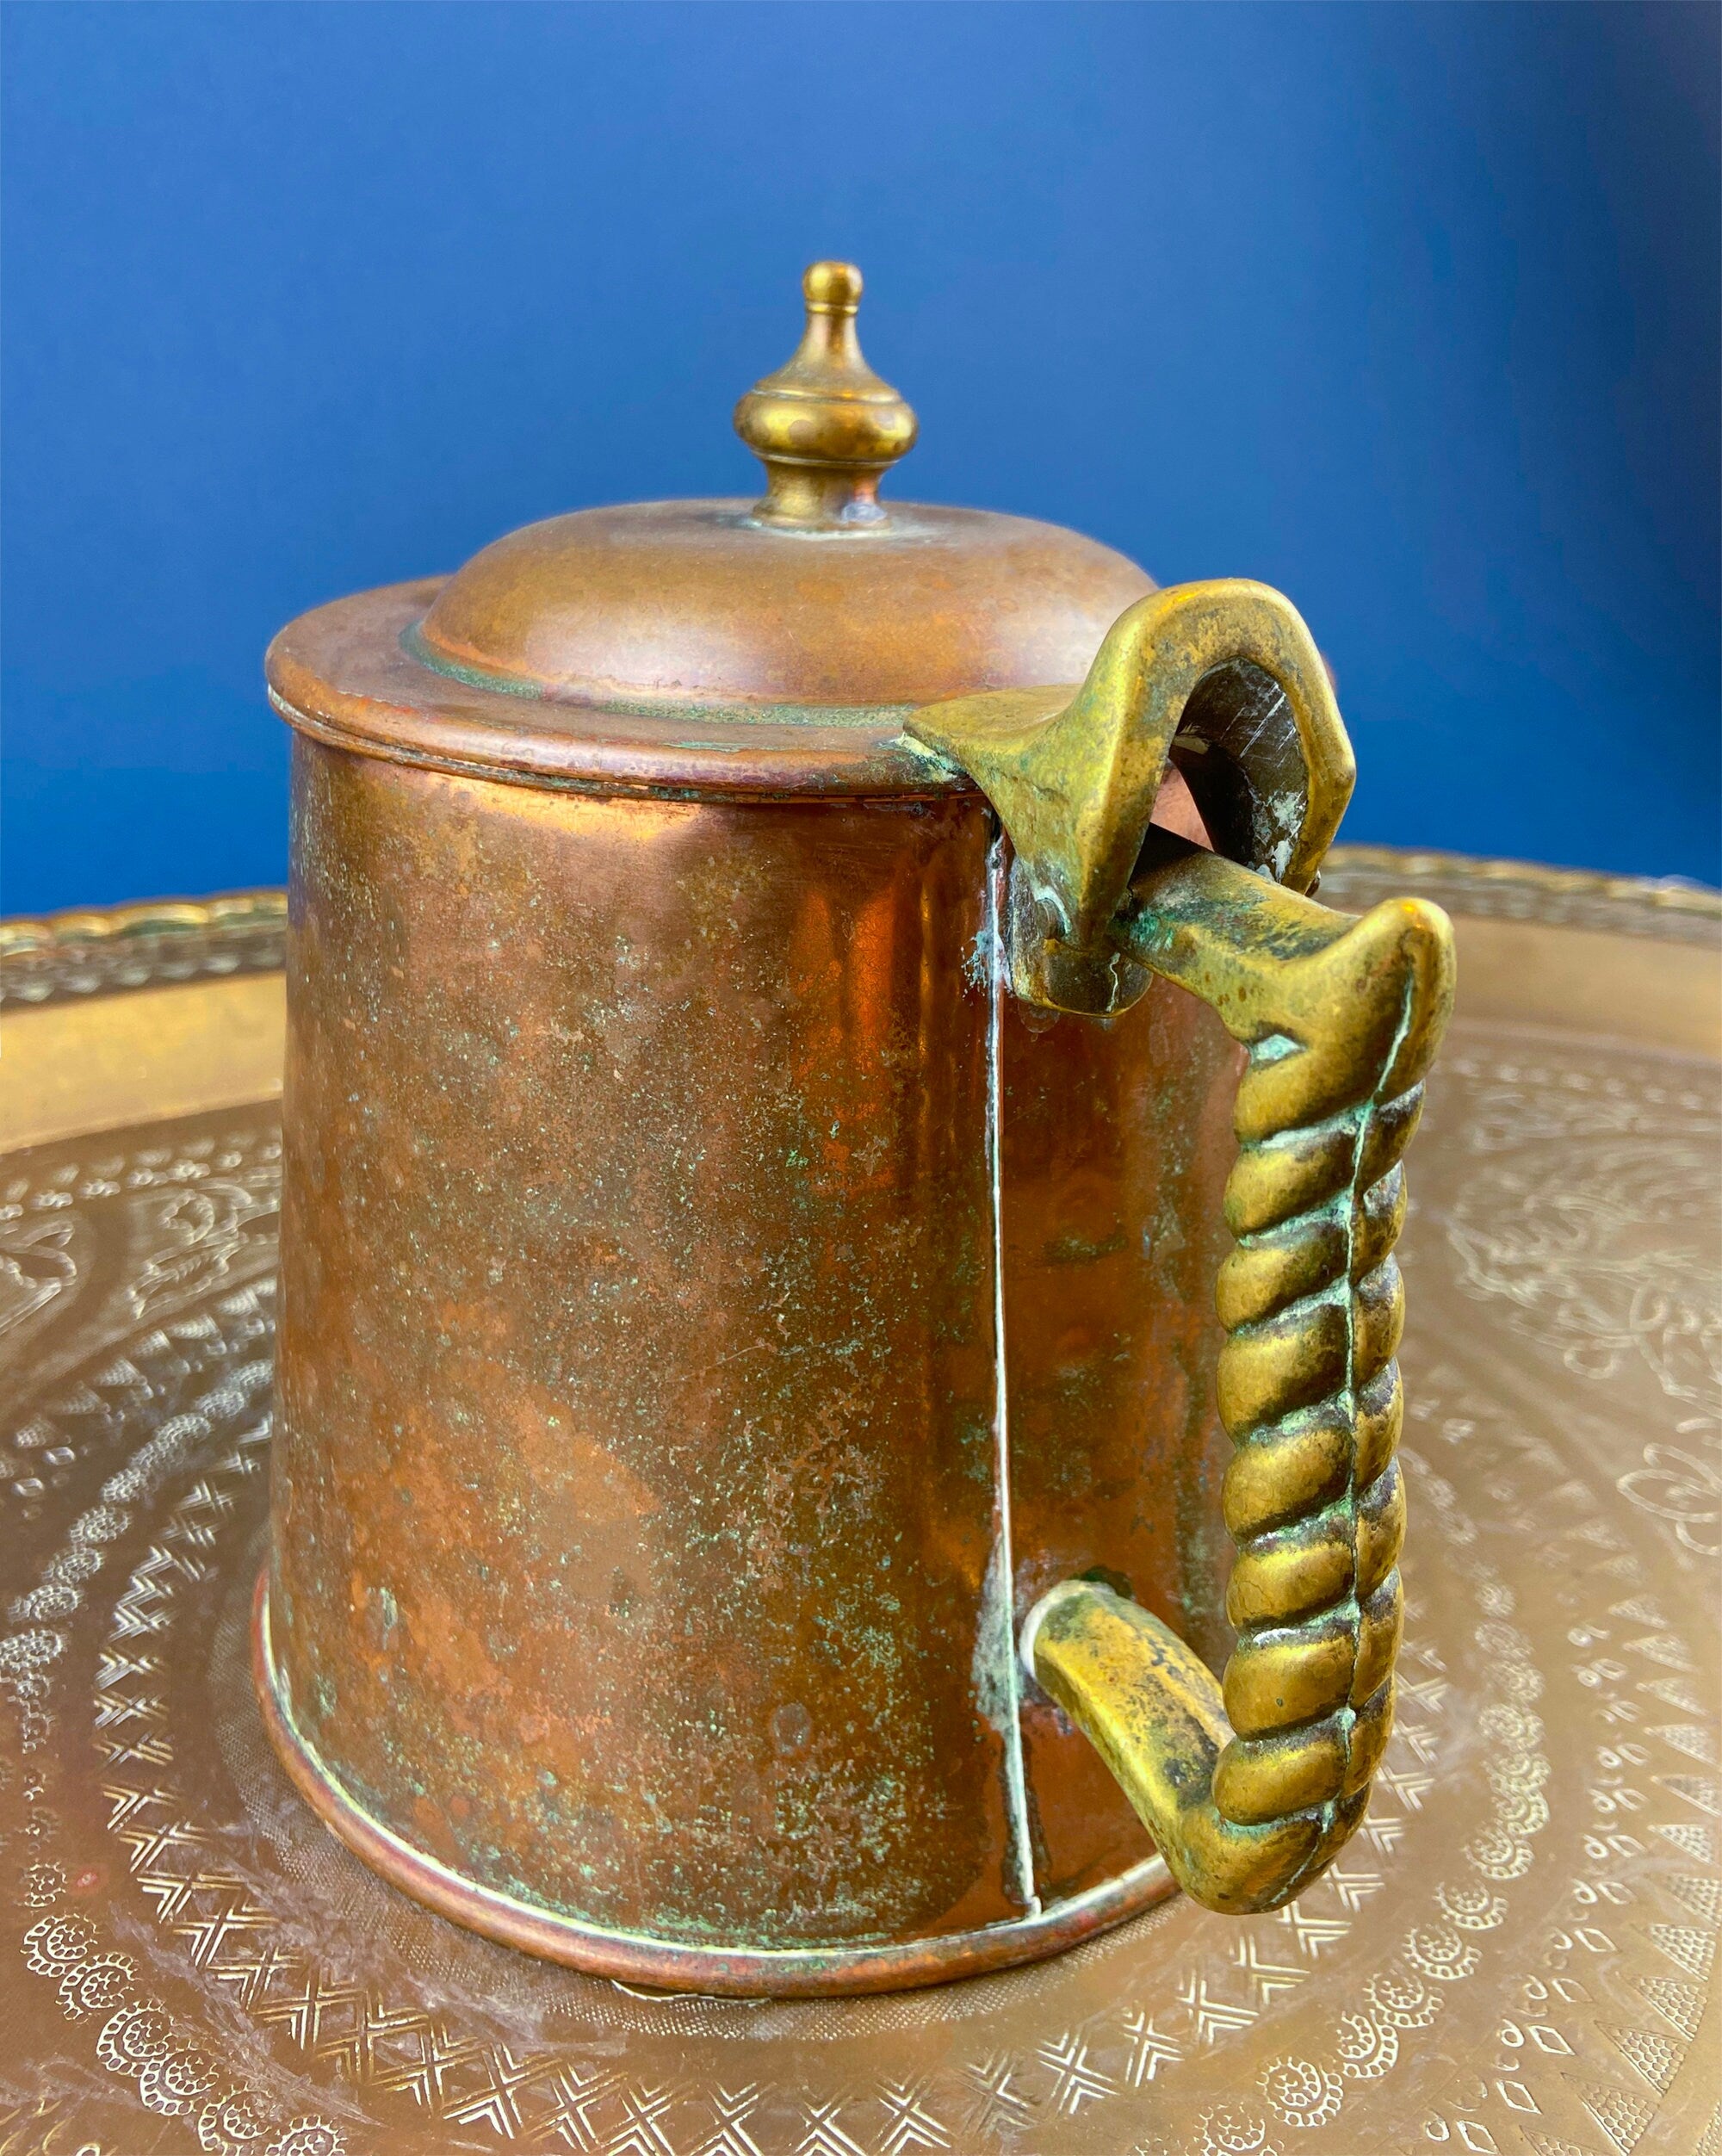 Copper Coffee Pot  Handmade copper pots for sale - viokagallery